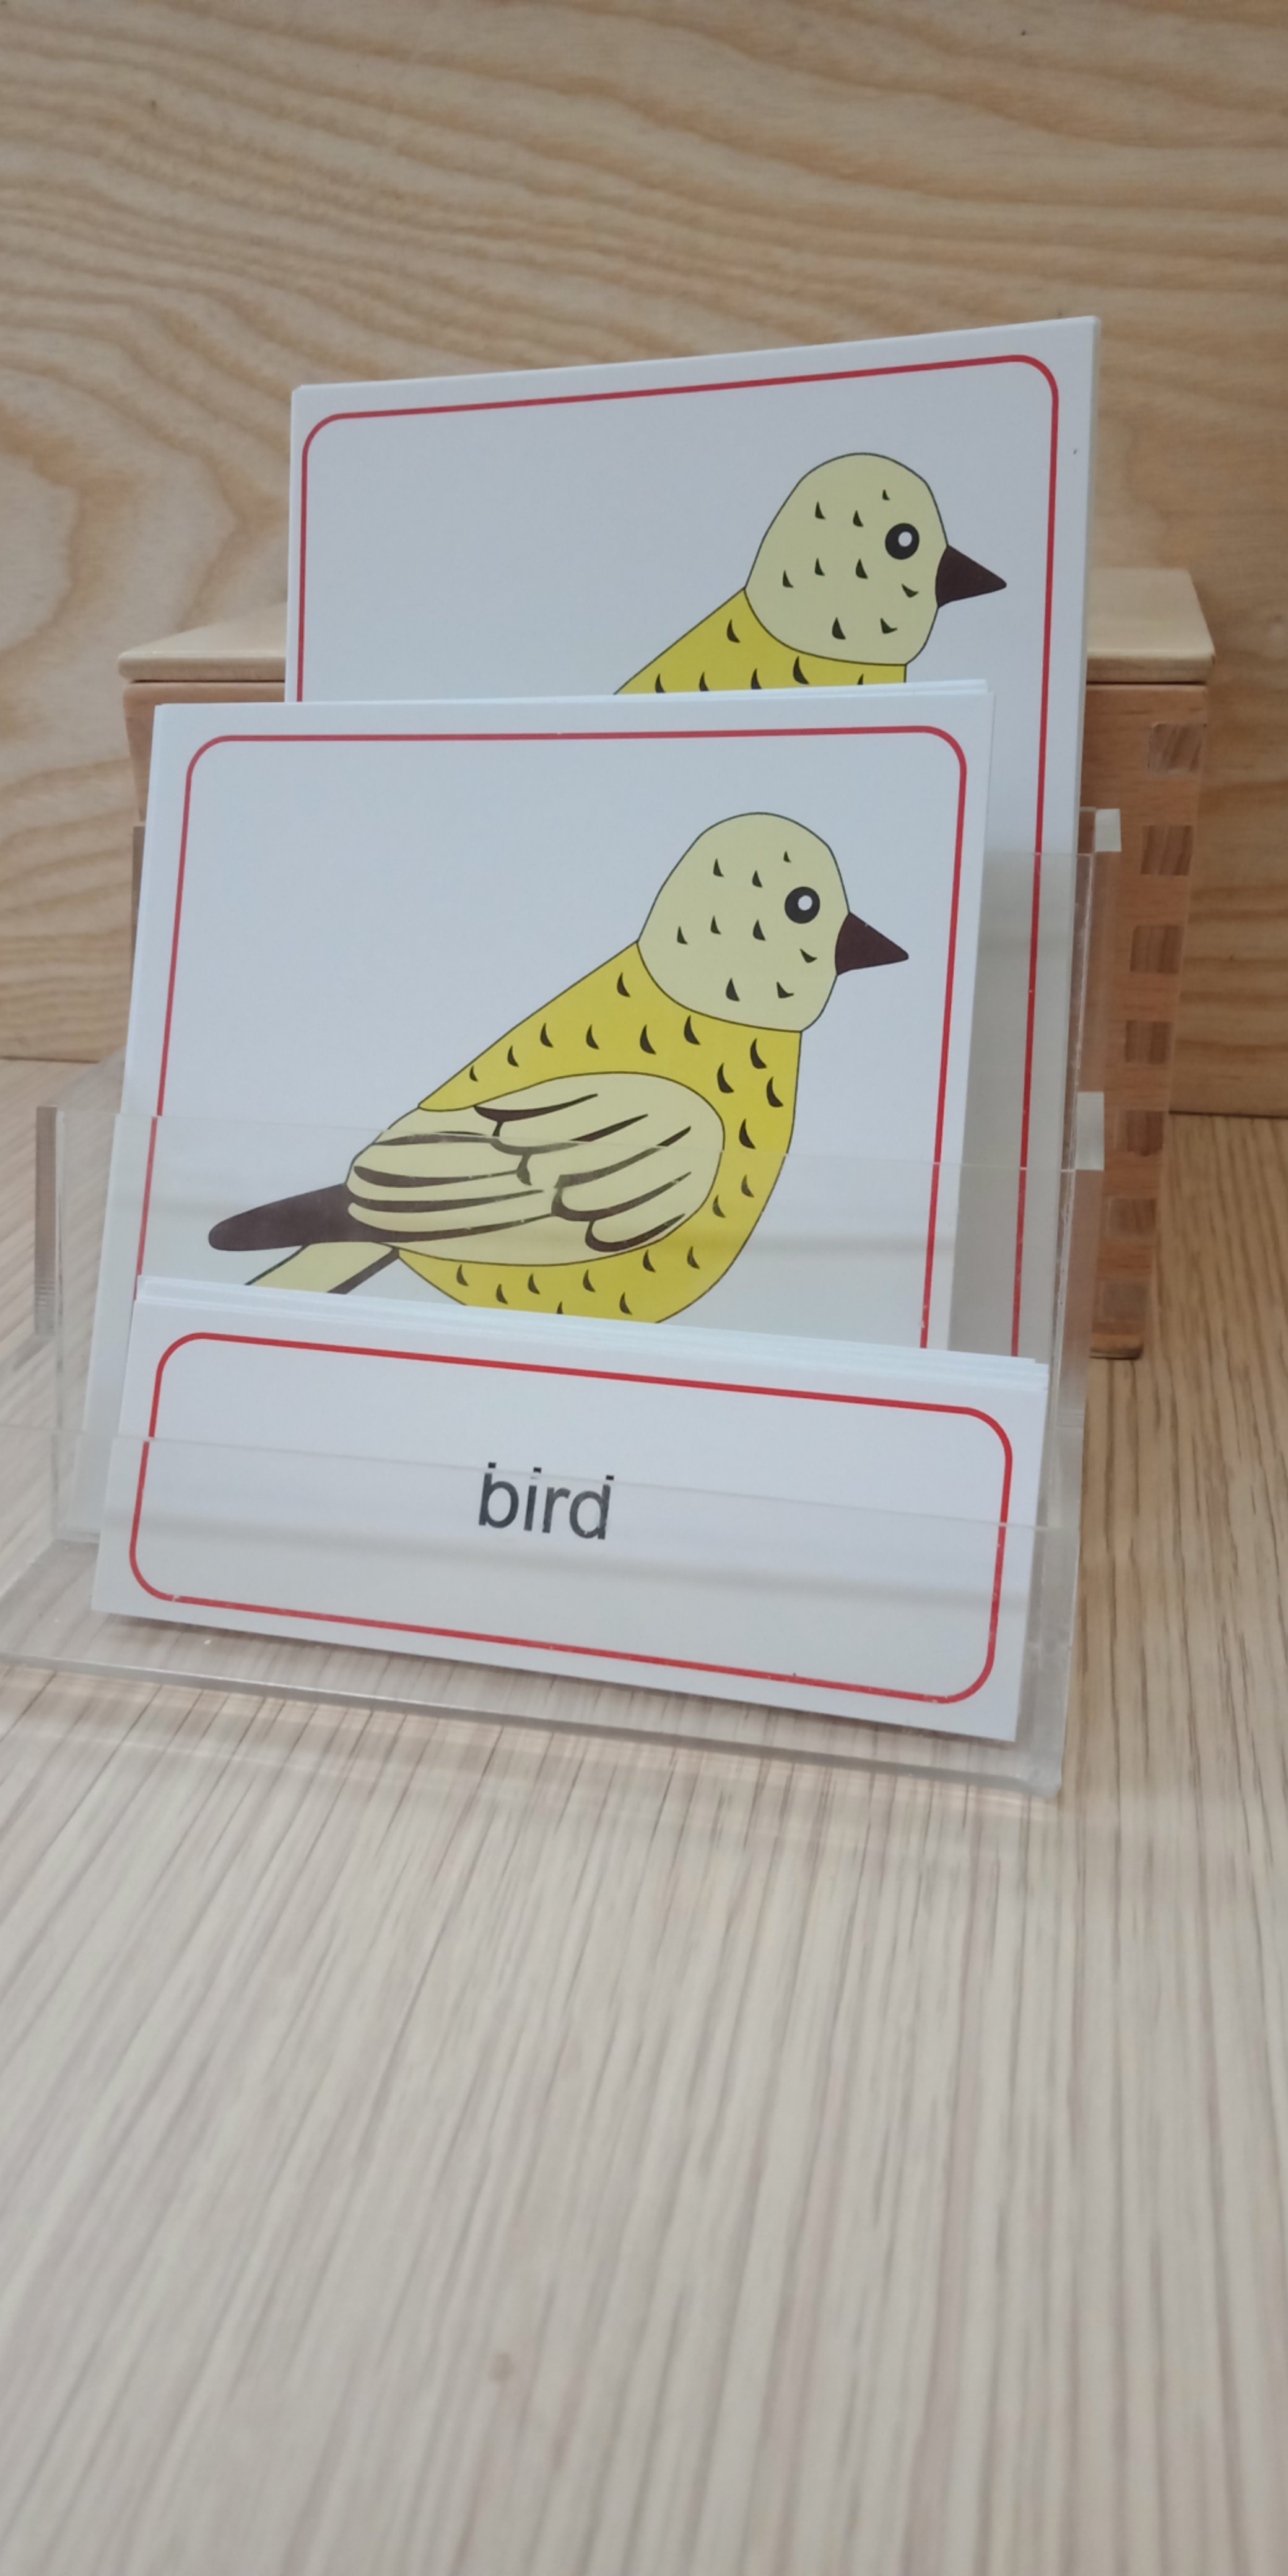 Thẻ 3 phần các bộ phận của chim - Theo tủ động vật không có khay - Tiếng Anh